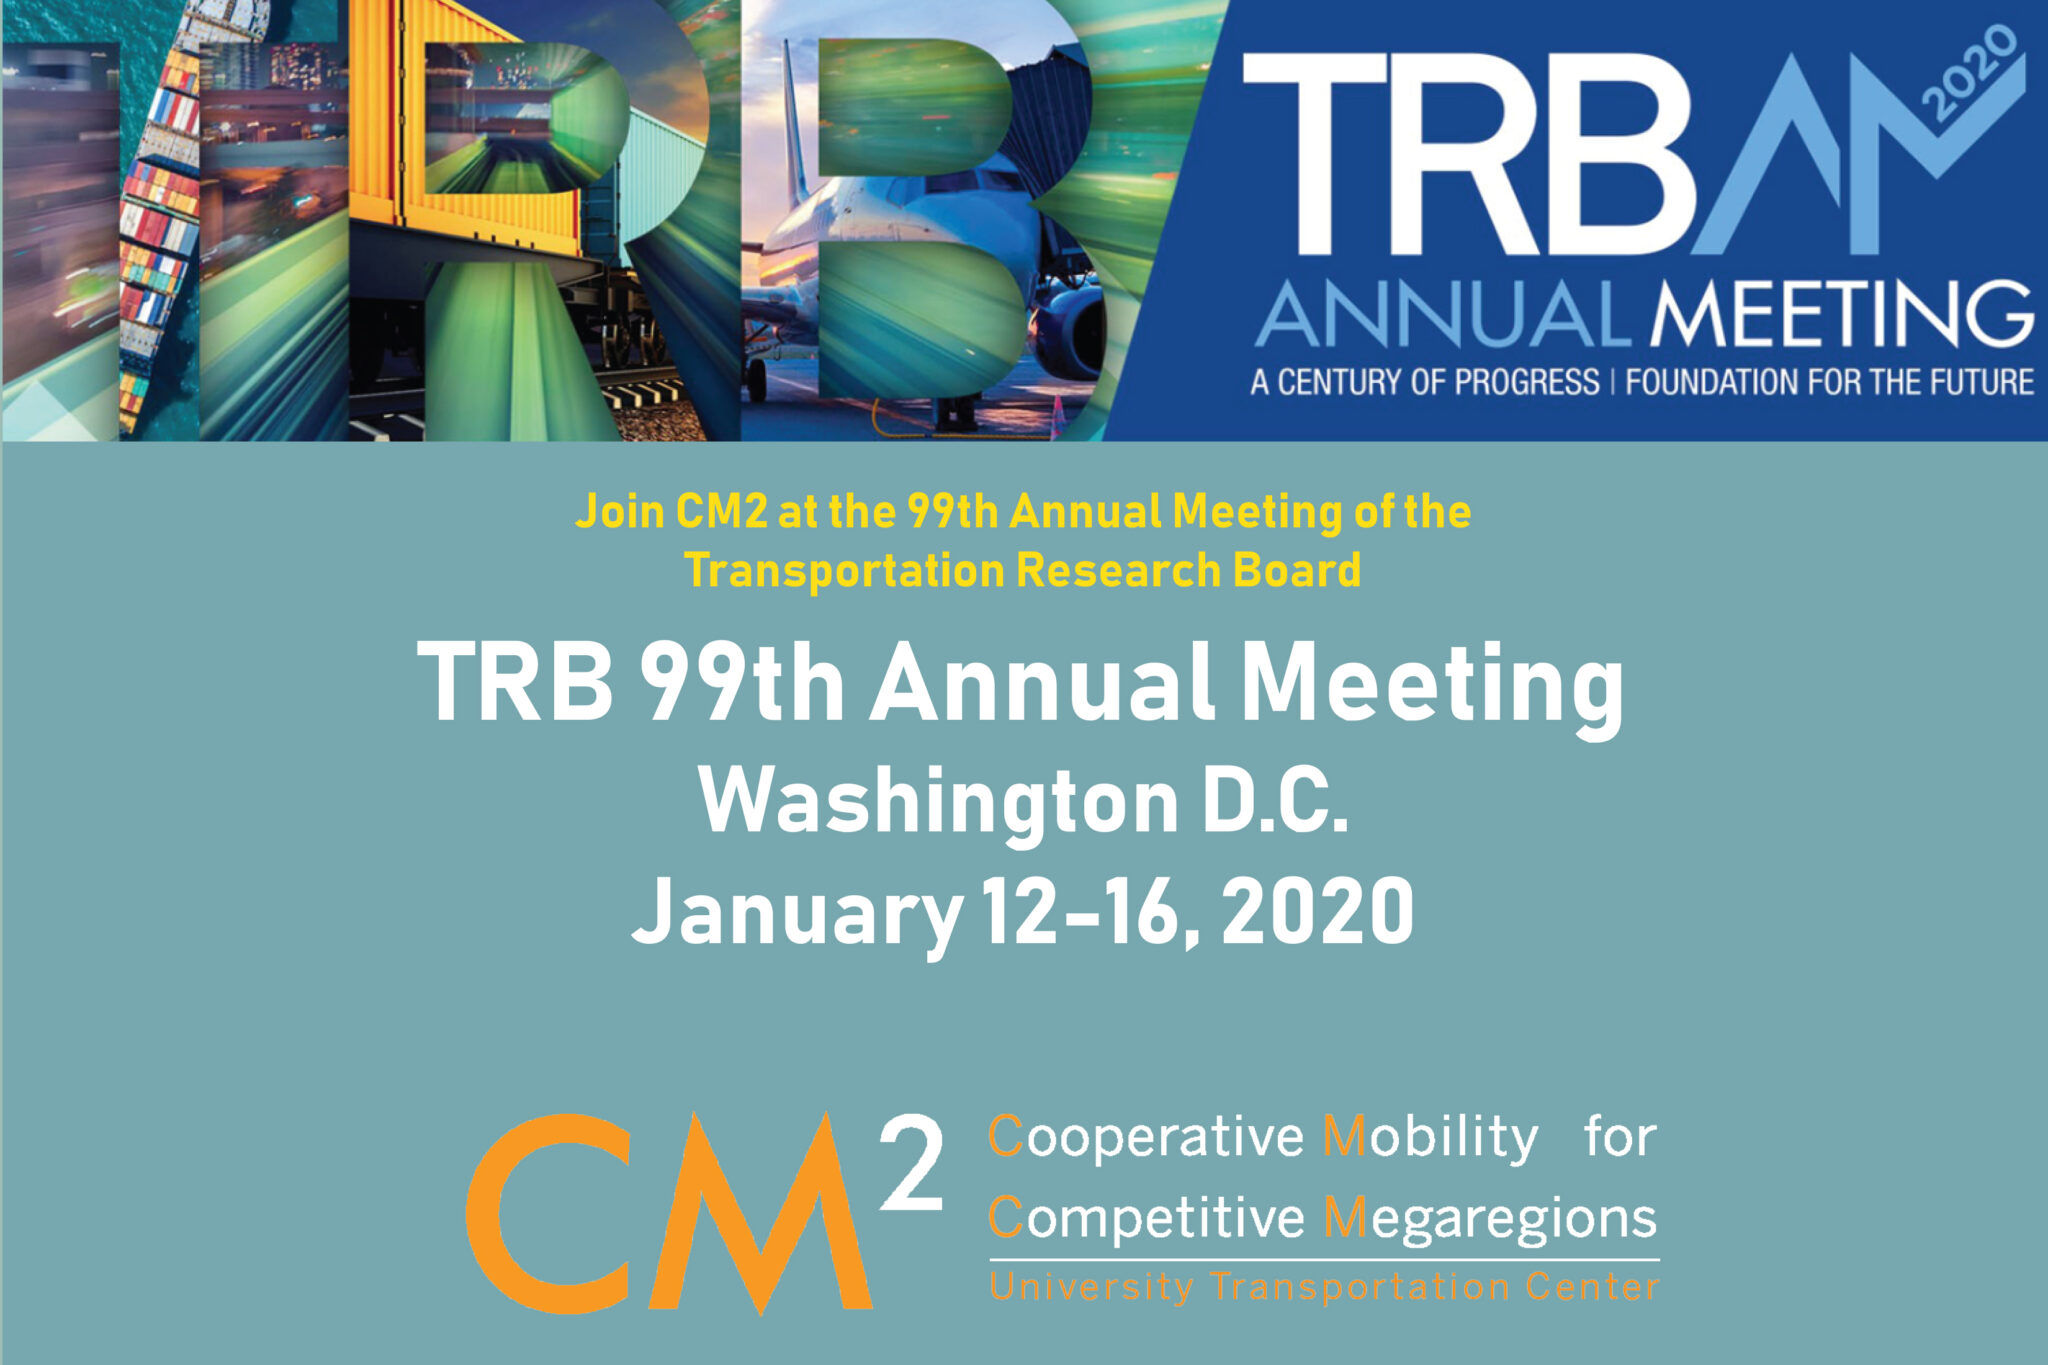 TRB Annual Meeting 2020